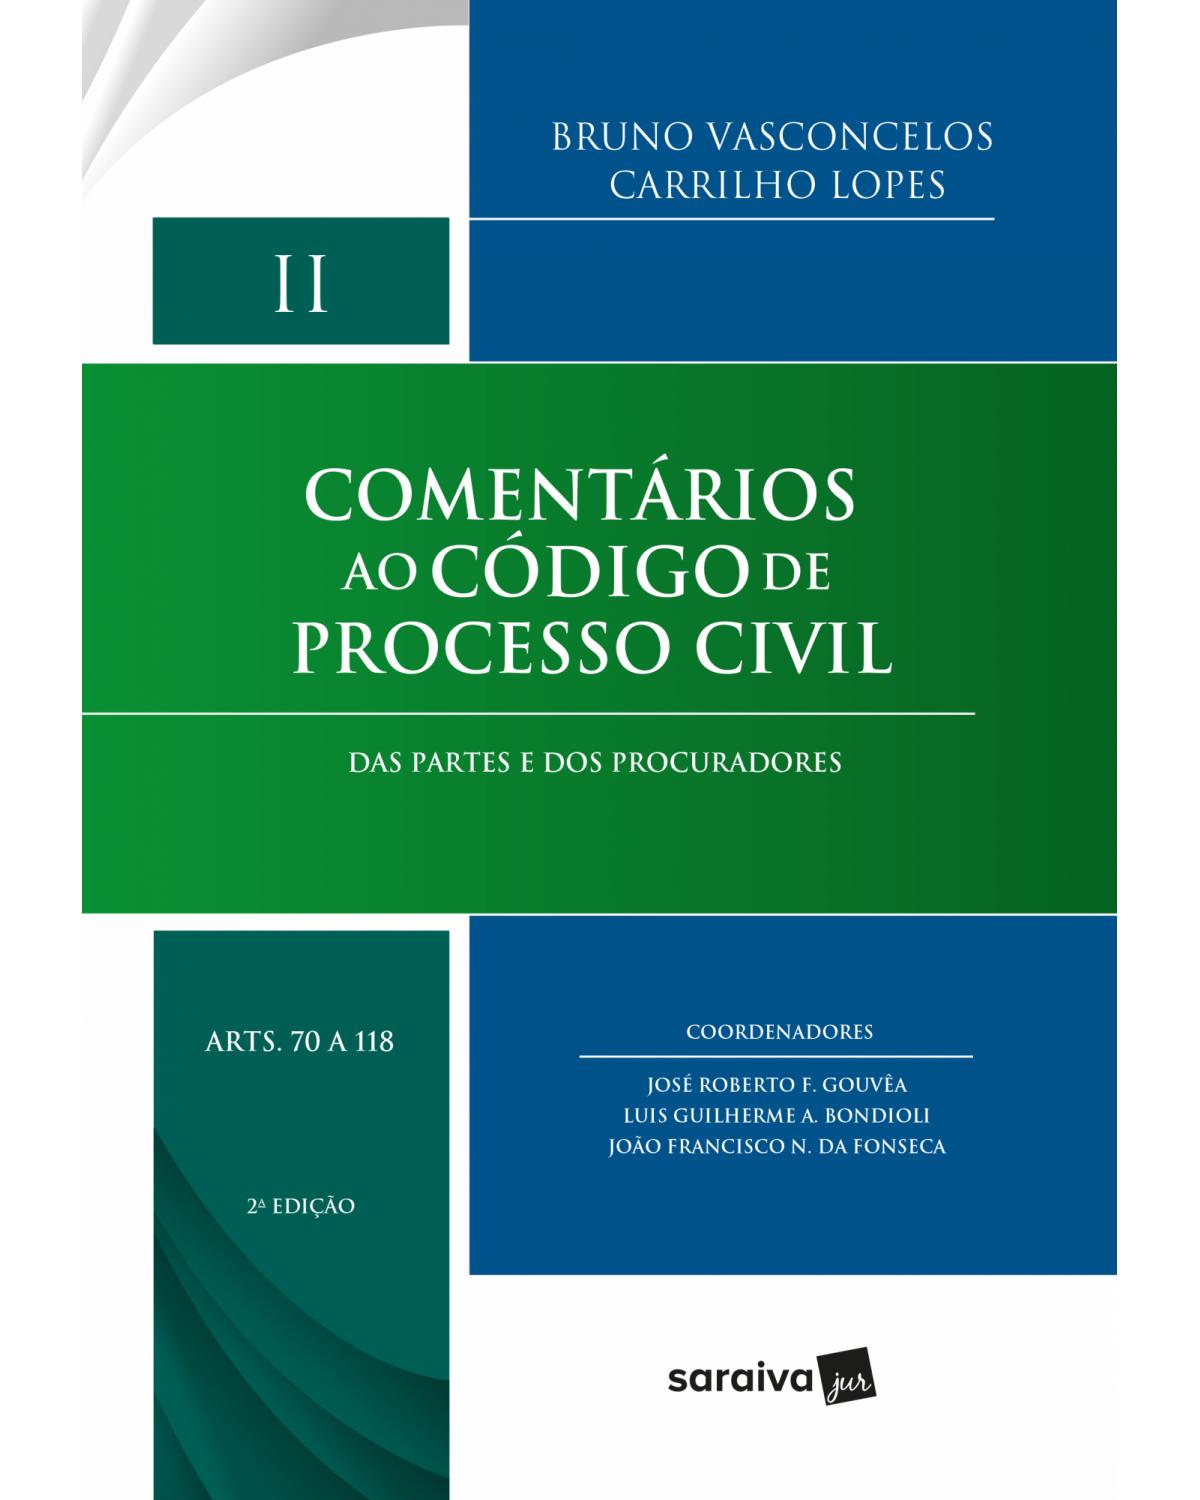 Comentários ao código de processo civil - Volume 2: das partes e dos procuradores - Arts. 70 a 118 - 2ª Edição | 2018